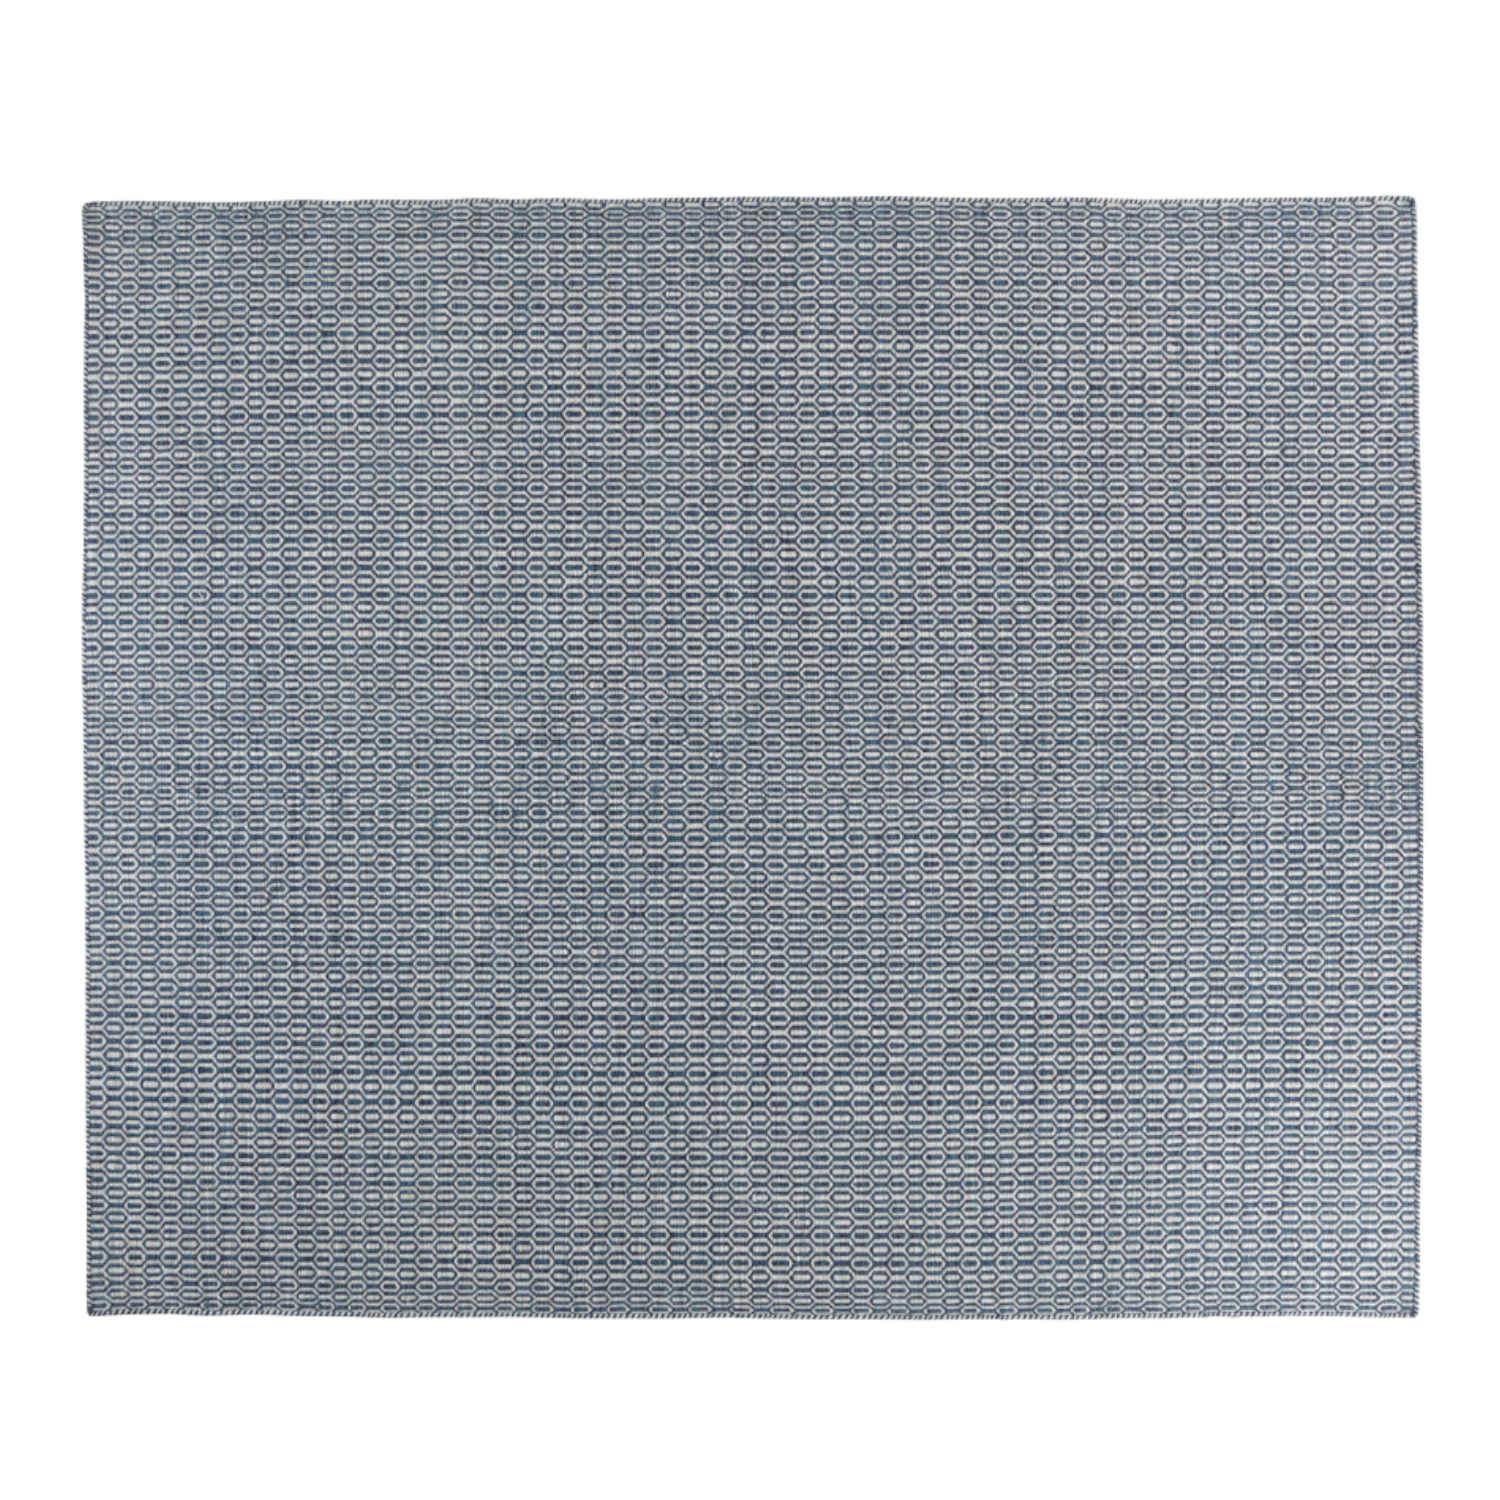 VanGard Vol. III Teppich, Grösse 300 x 400 cm, Farbe titanium von miinu